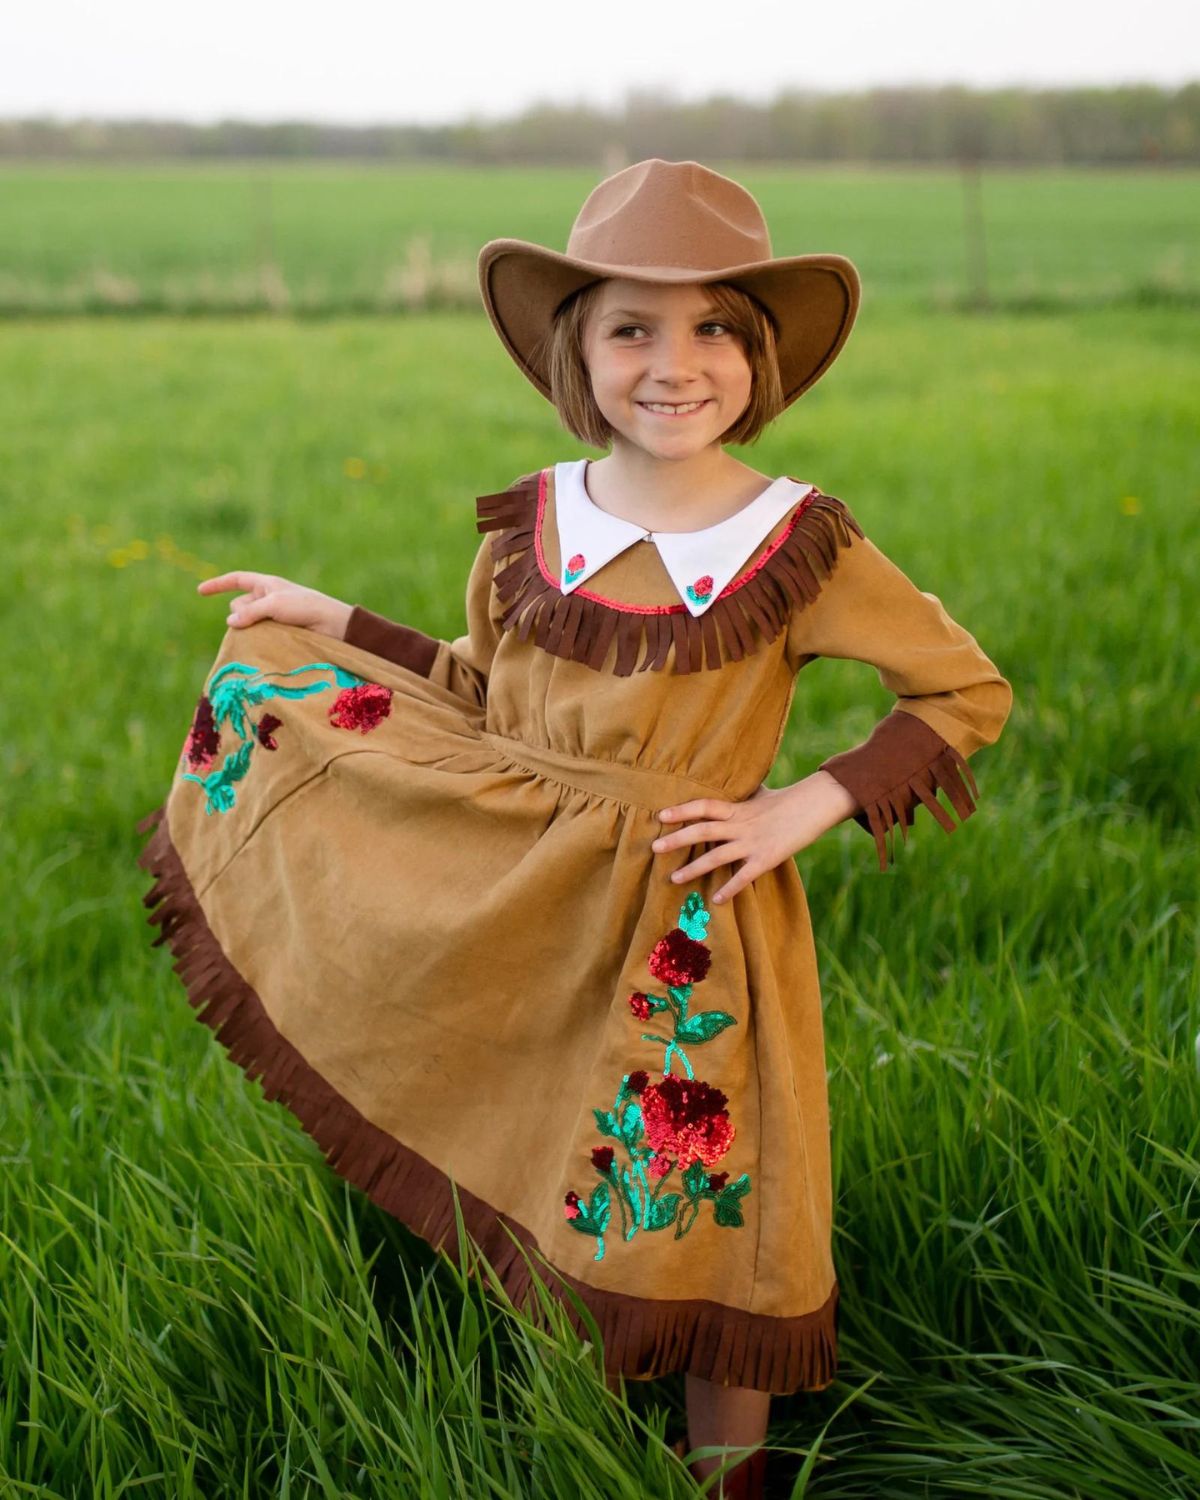 Déguisement Cowboy Enfant Costume Cowgirl Accessoires Cowboy